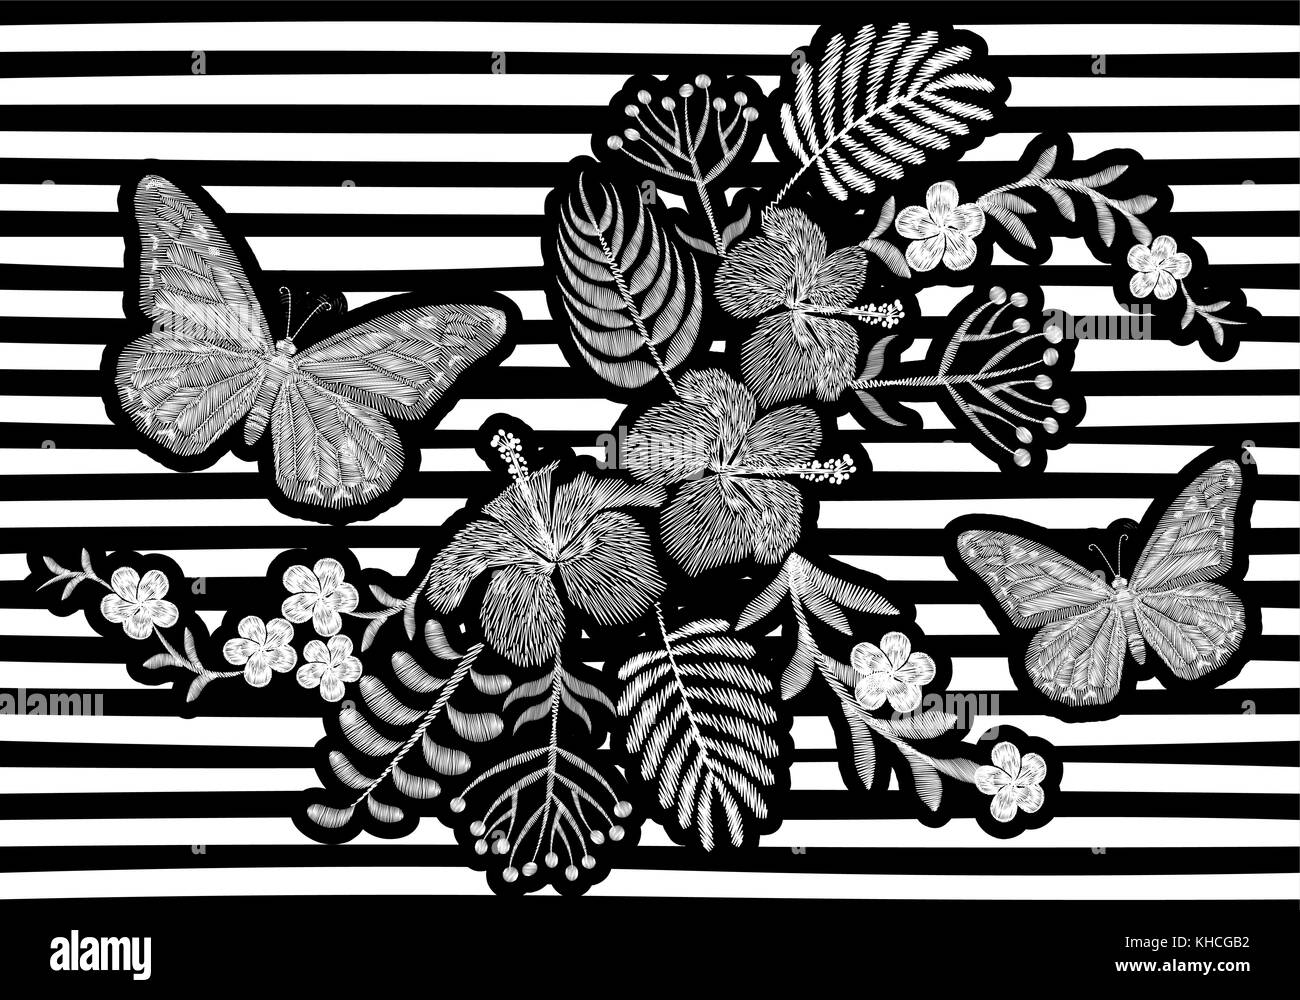 Schmetterling realistische Stickerei Textur Design. Exotische weiße Blumen mode Dekoration auf Gestreifte monochromen Hintergrund Vector schwarz Abbildung: Stock Vektor